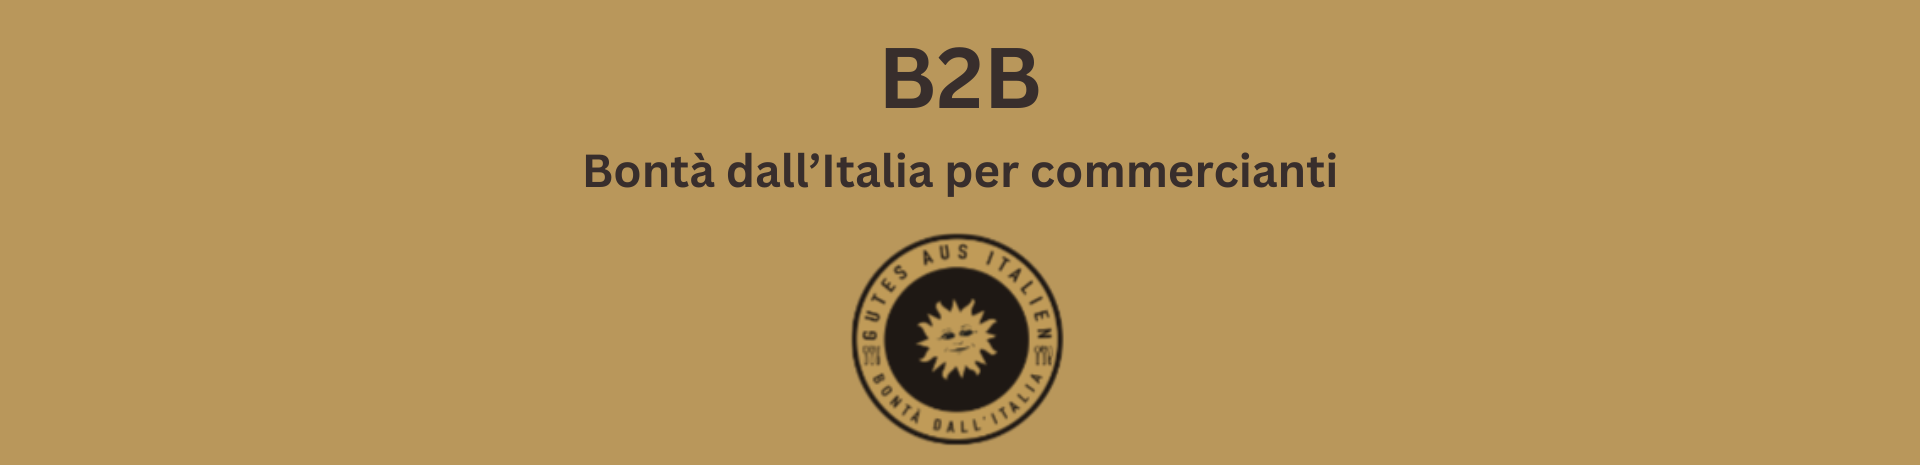 B2B - Bontà dall'Italia per commercianti